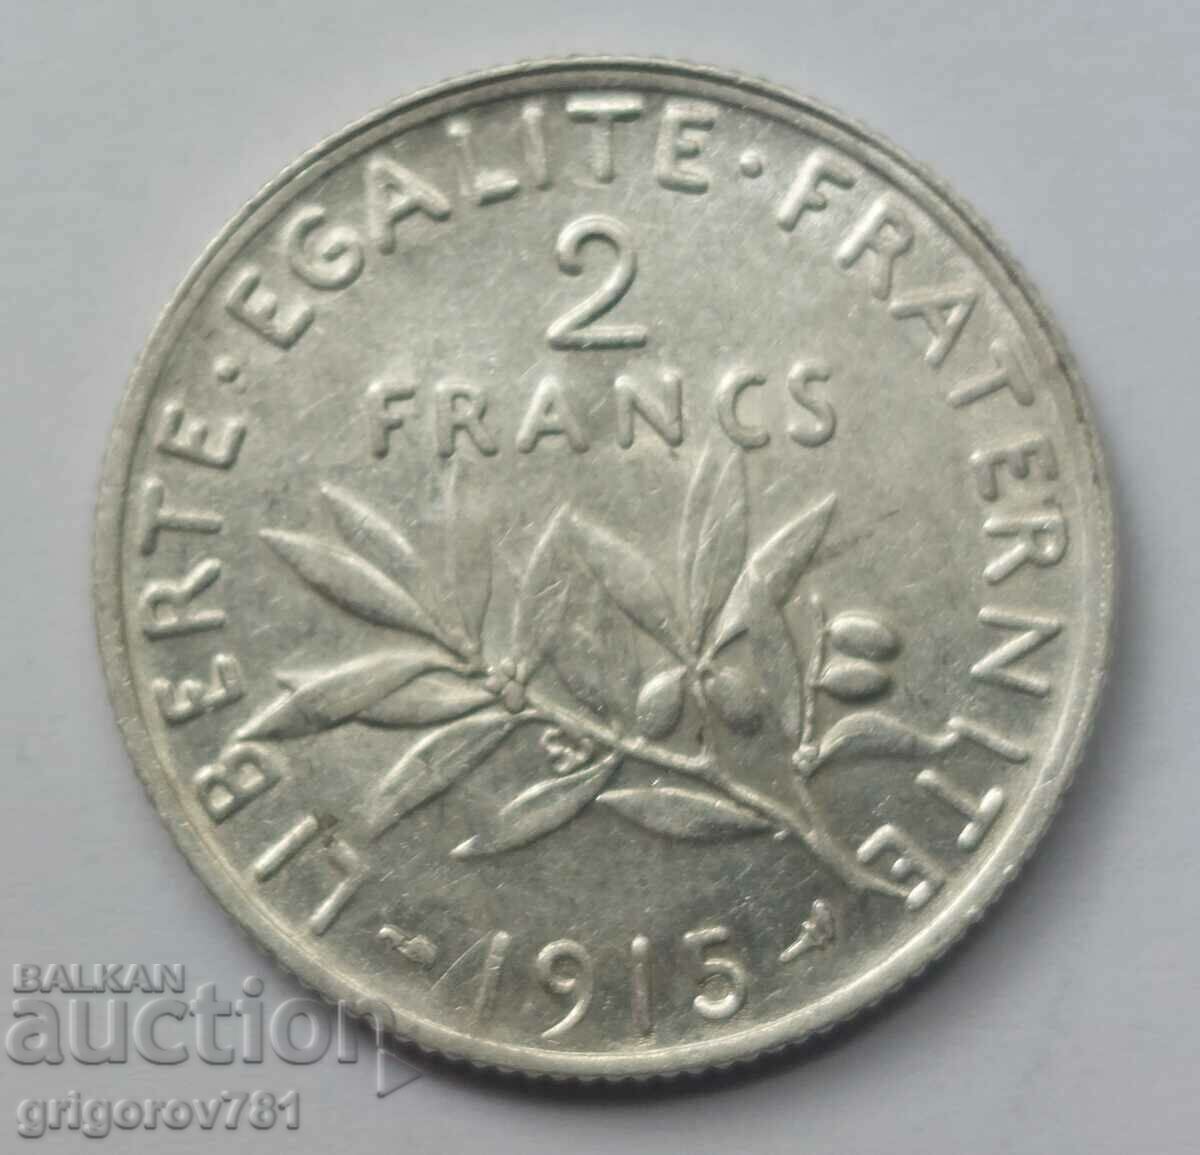 2 Franci Argint Franta 1915 - Moneda de argint #63